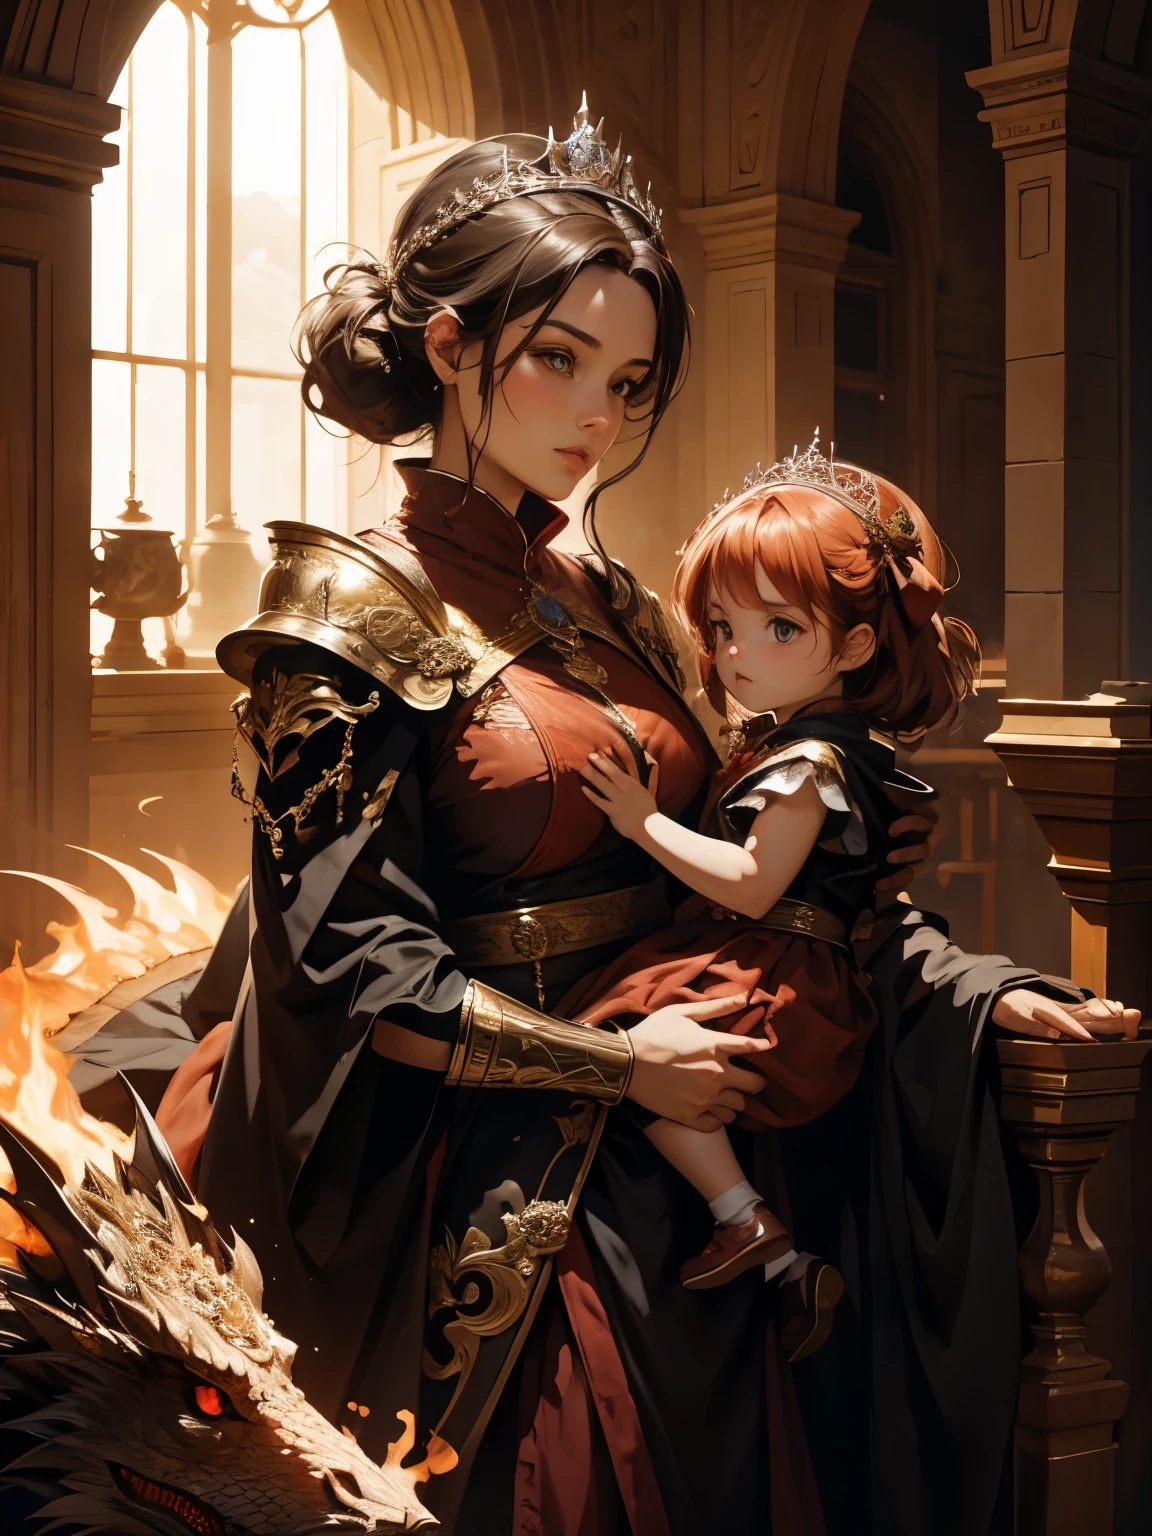 (mejor calidad), (alto detalle), la bella reina de los dragones con su dragón más amado sosteniendo a su hija, (rojo fuego 1:1), HDR, uhd, 4k, 8k, 3d.